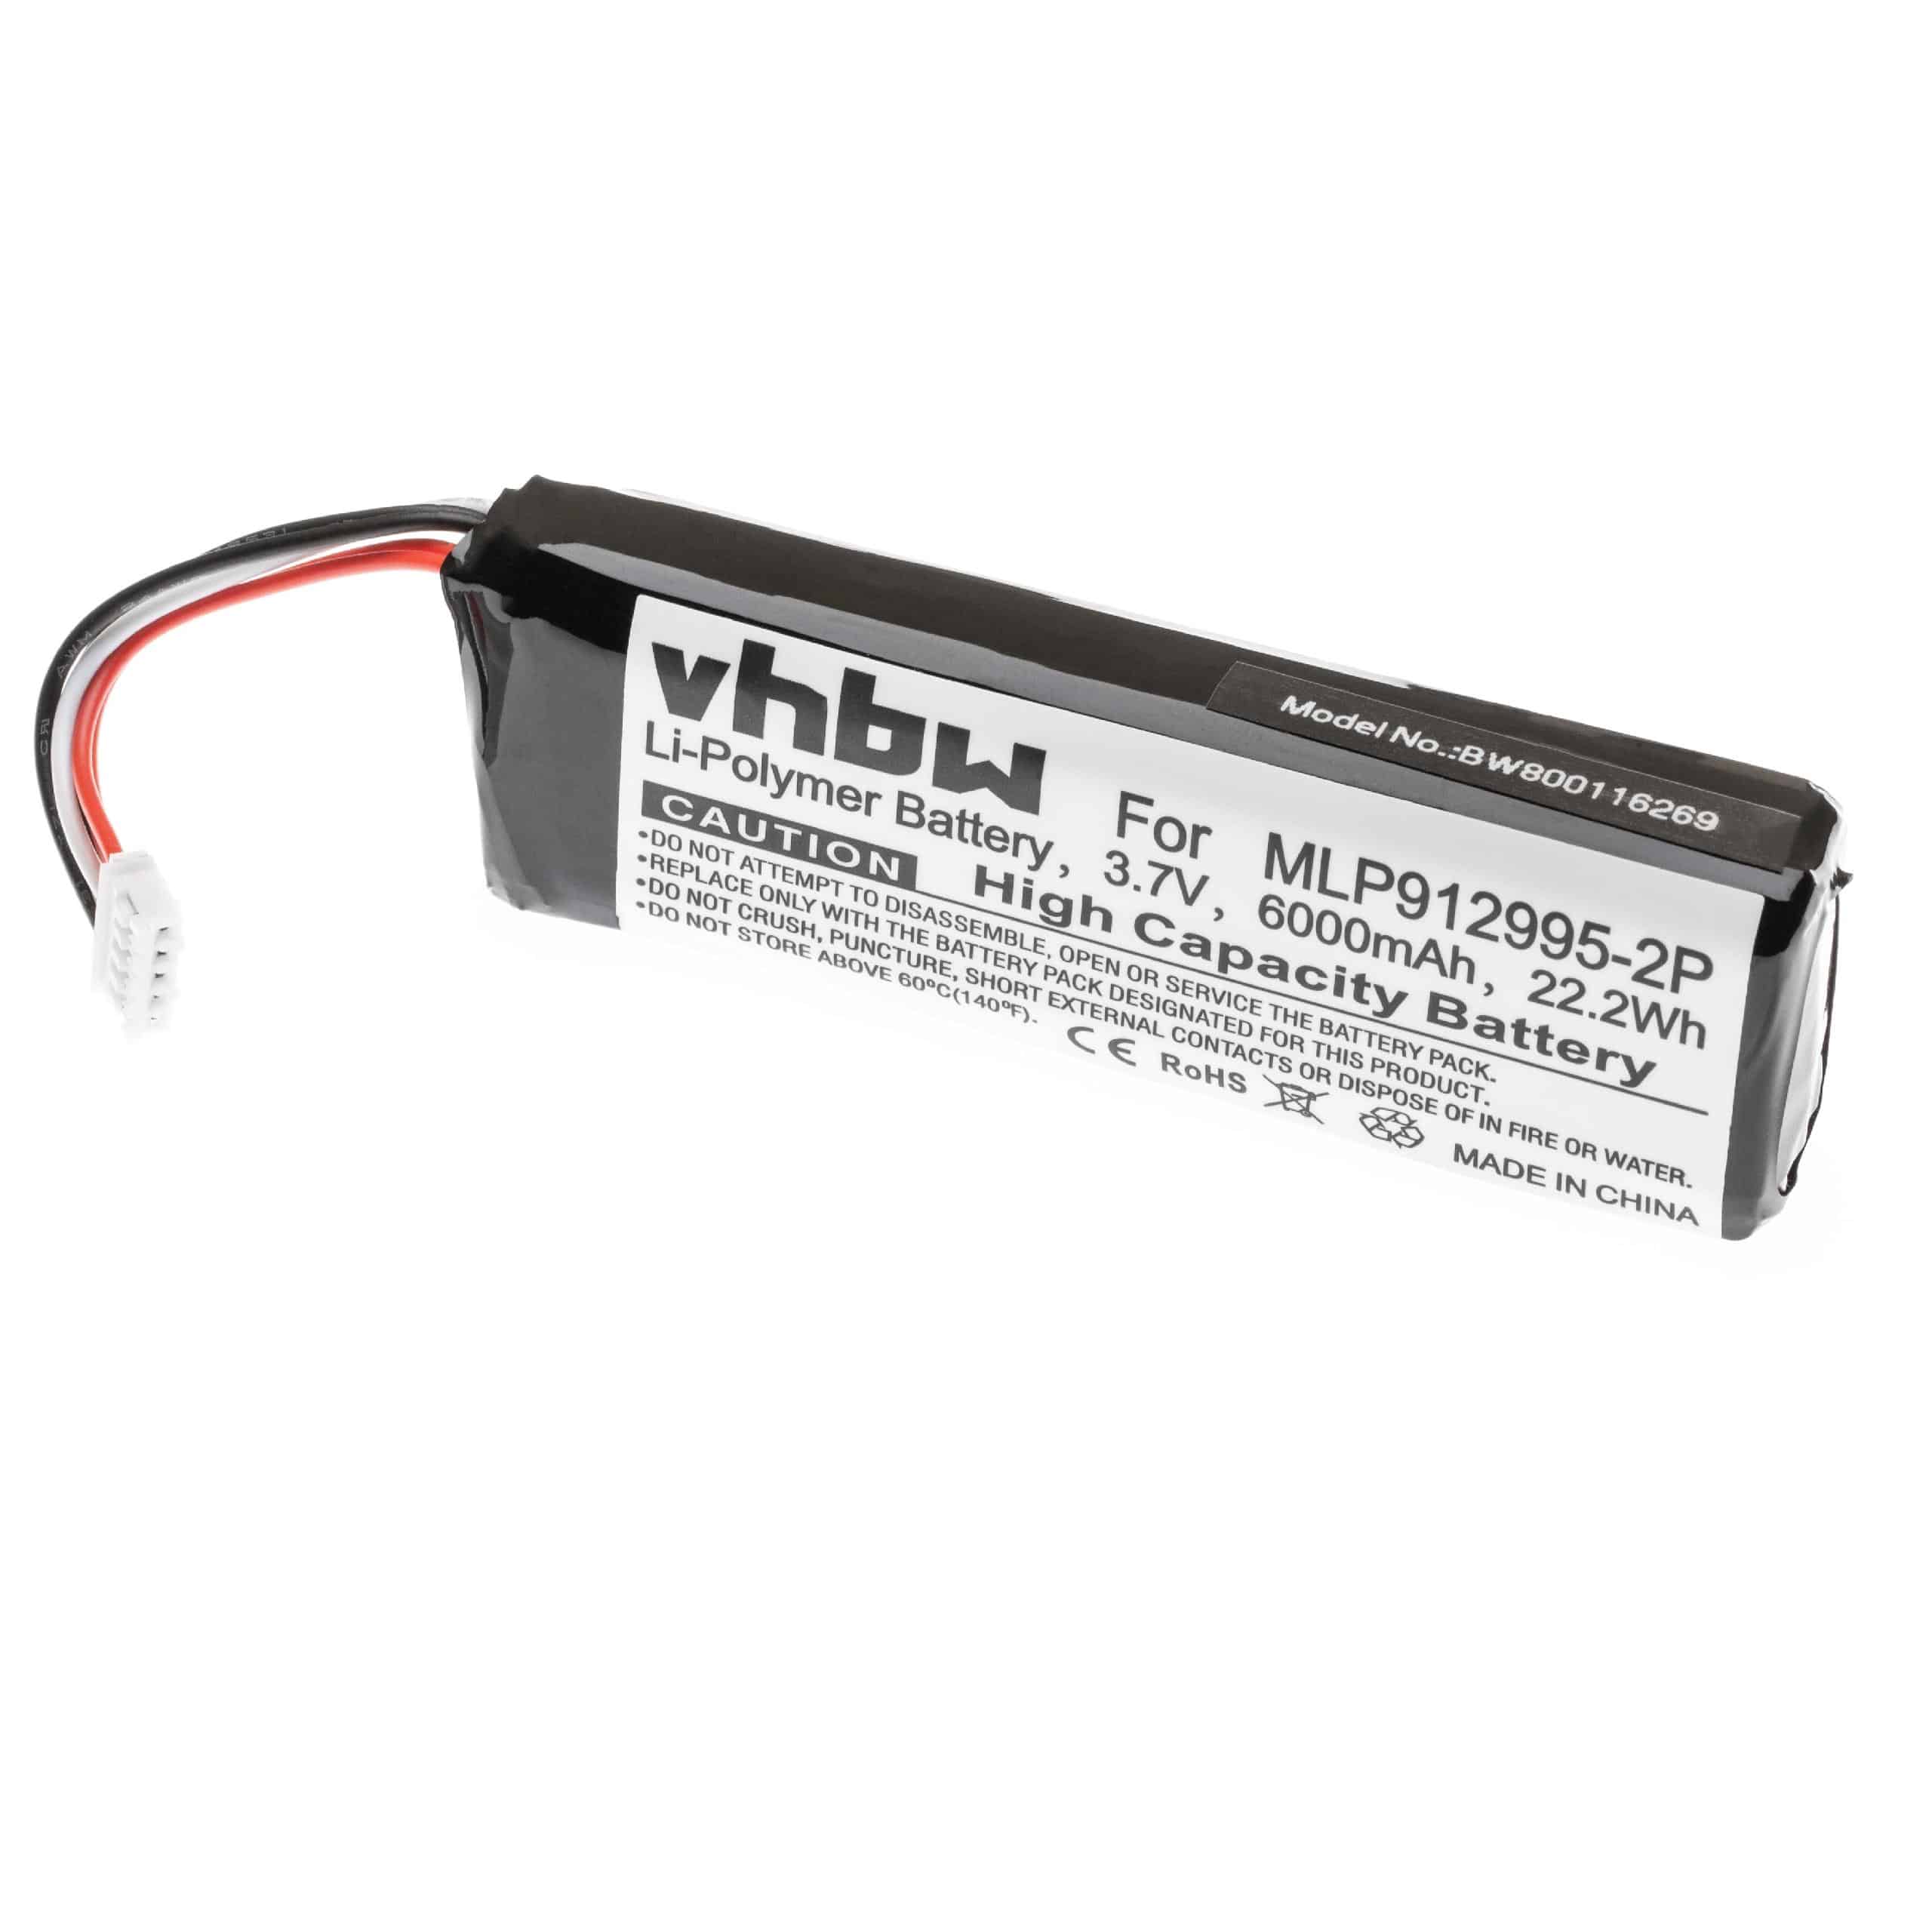 Akumulator do głośnika JBL zamiennik JBL MLP912995-2P - LiPo 6000 mAh